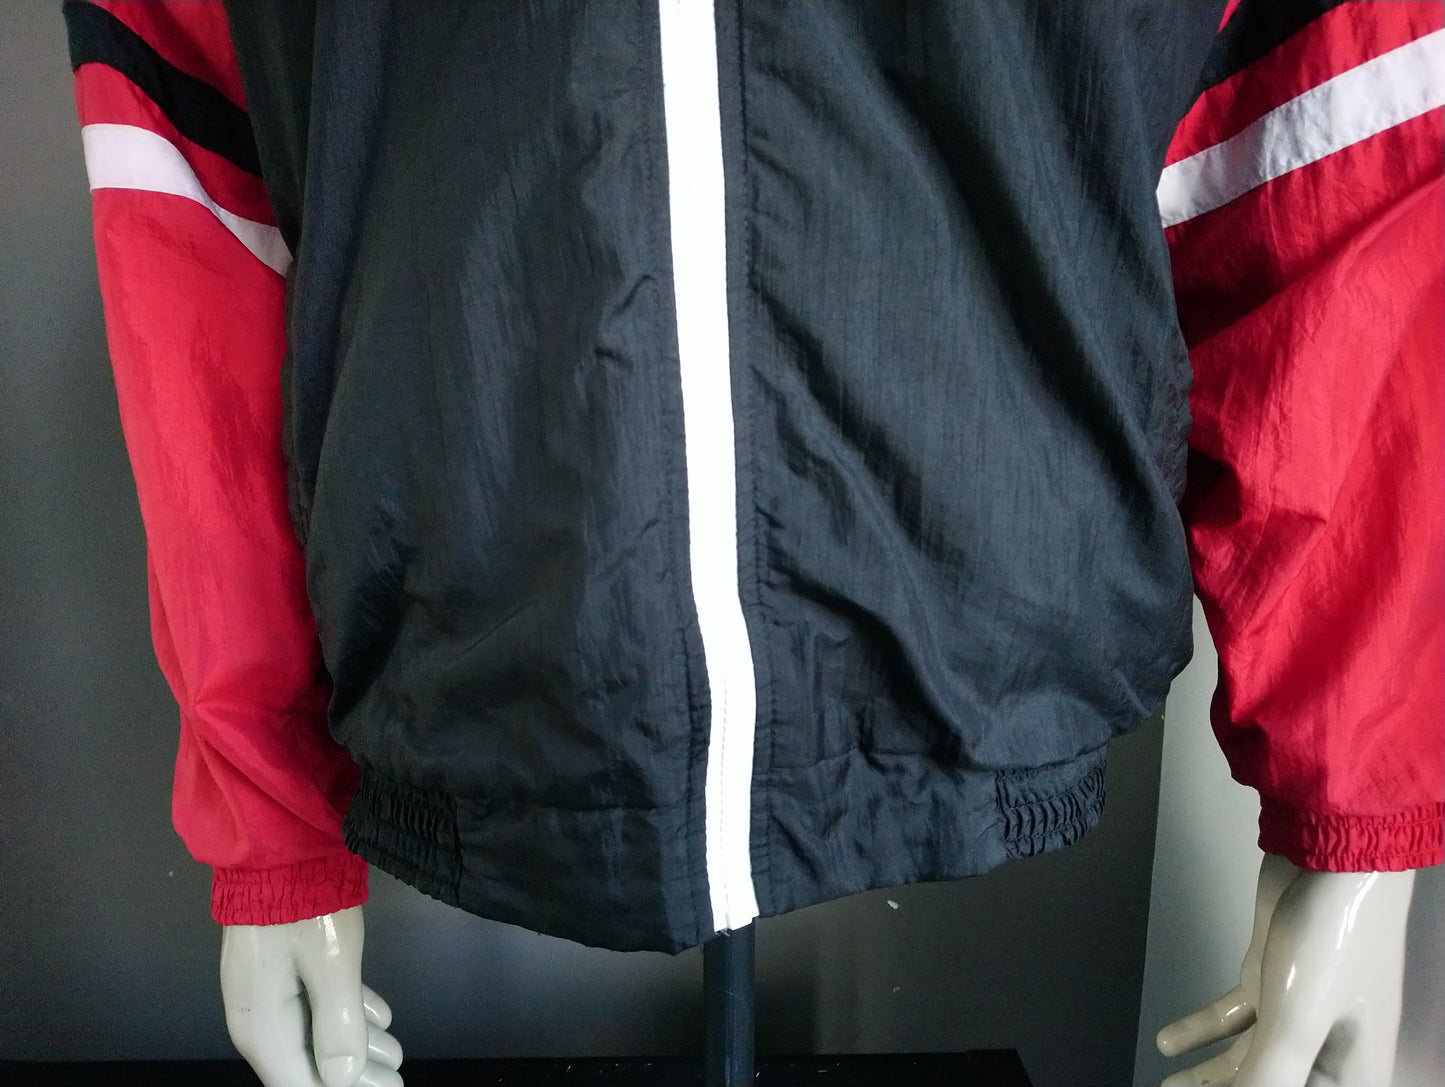 Veste de sport des années 80 - 90's - 90's. Couleur noir et blanc rouge. Taille l / xl.